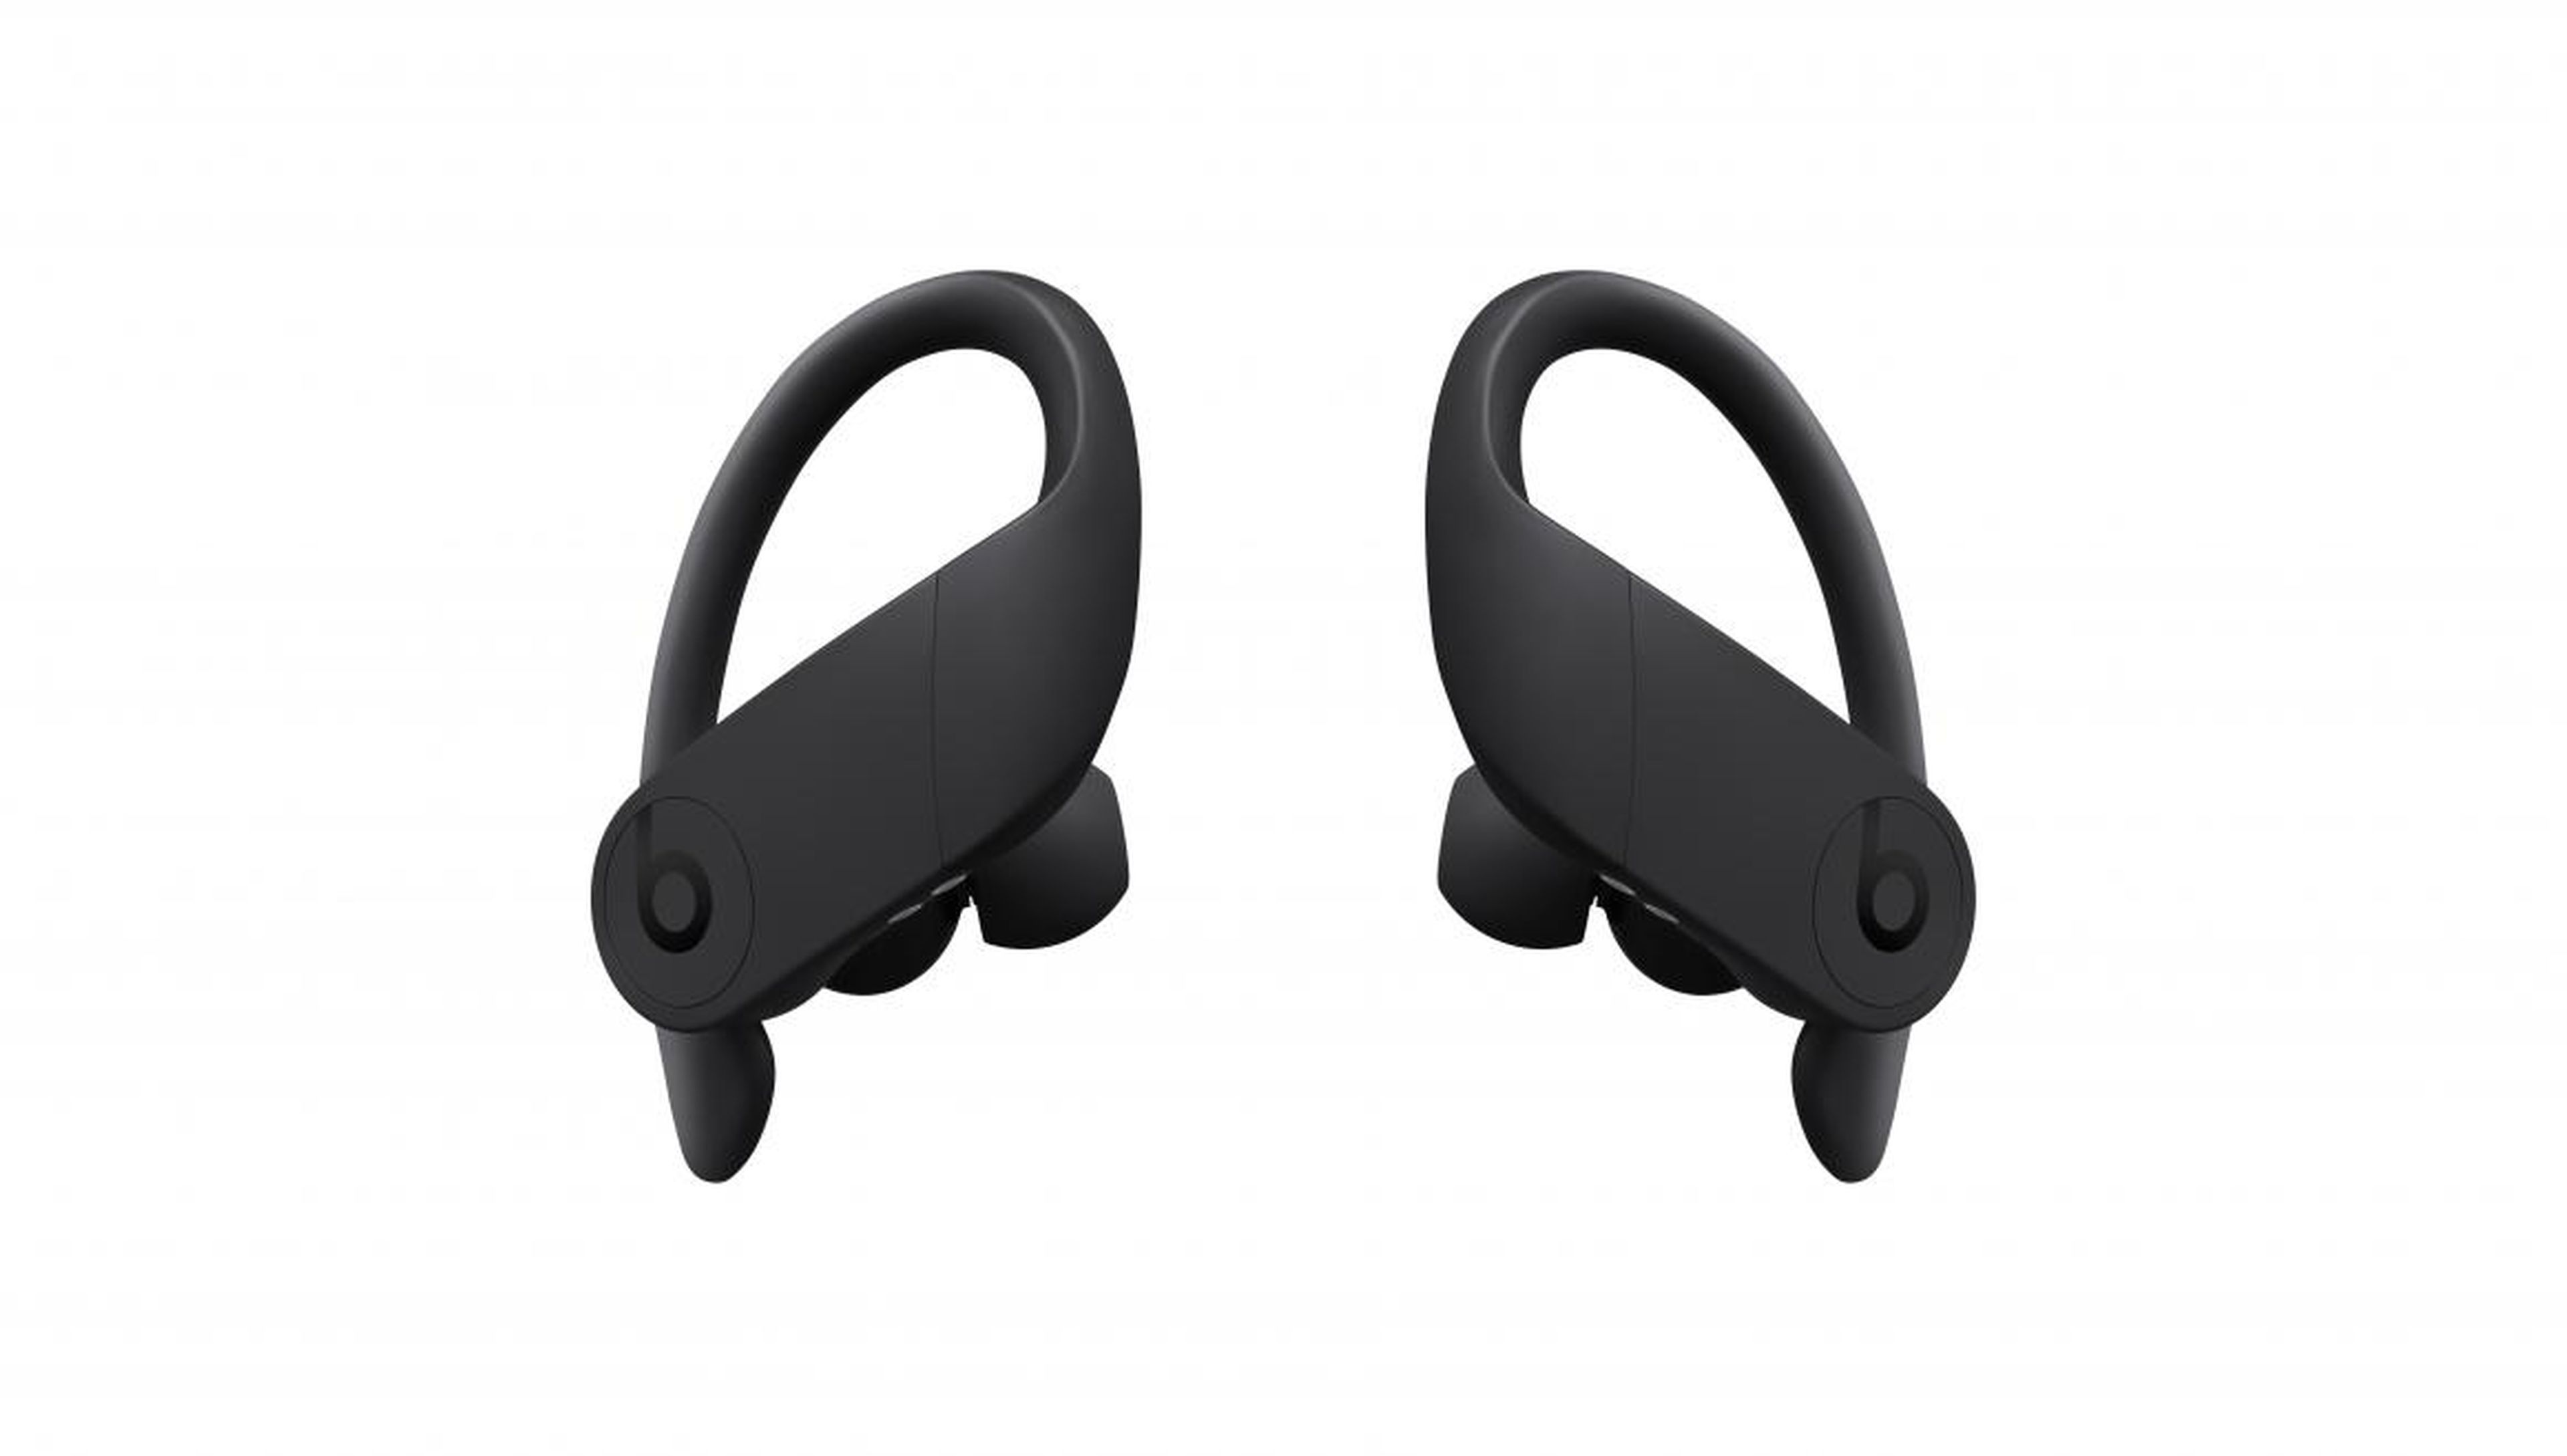 El diseño de los Powerbeats Pro es muy distintos al de los AirPods, ya que cuenta con un gancho para rodear la oreja y que el dispositivo tenga una mejor sujeción